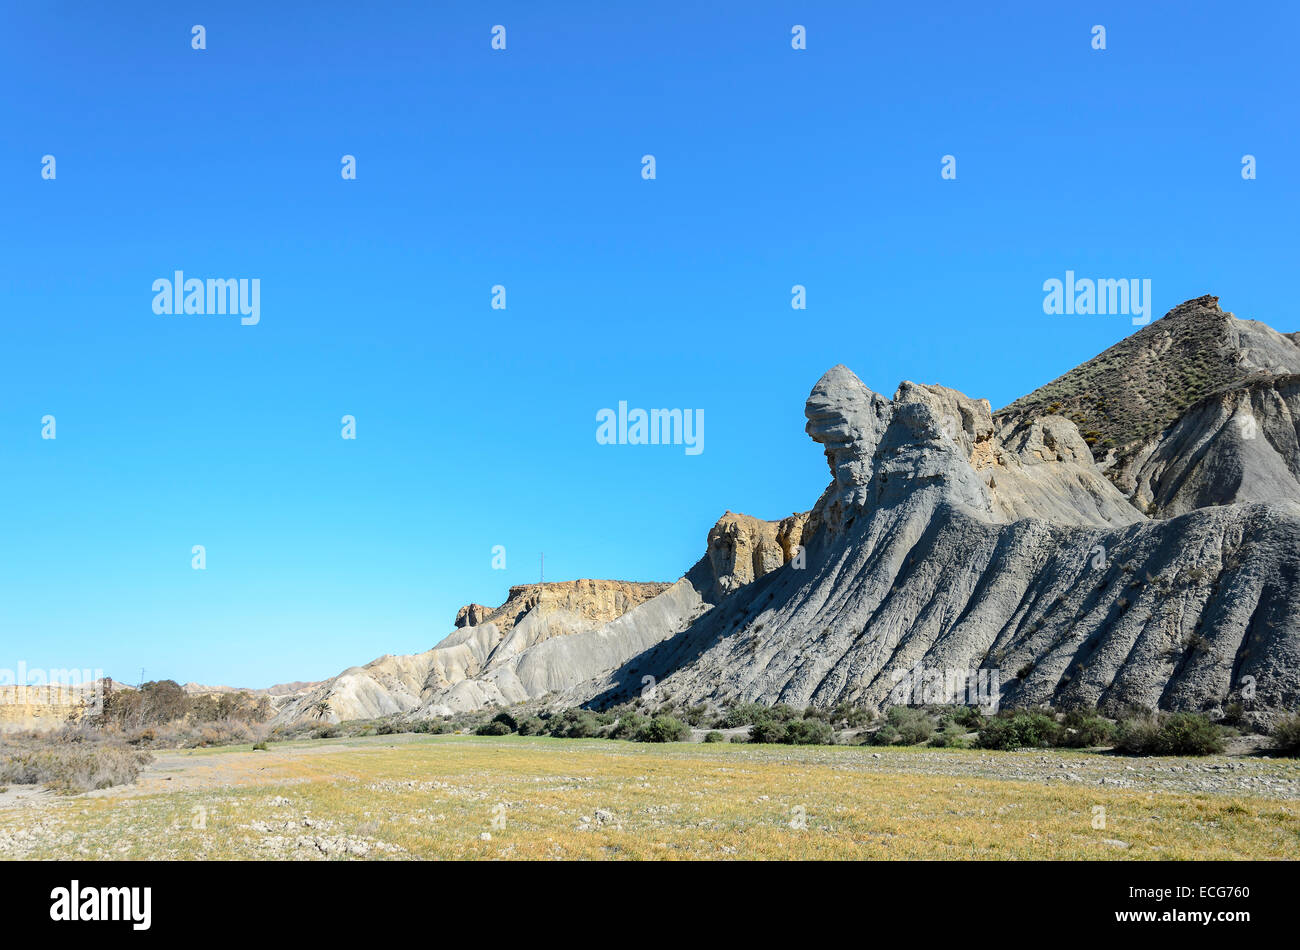 Rocas con formas extrañas, causada por la erosión en el desierto. Foto de stock